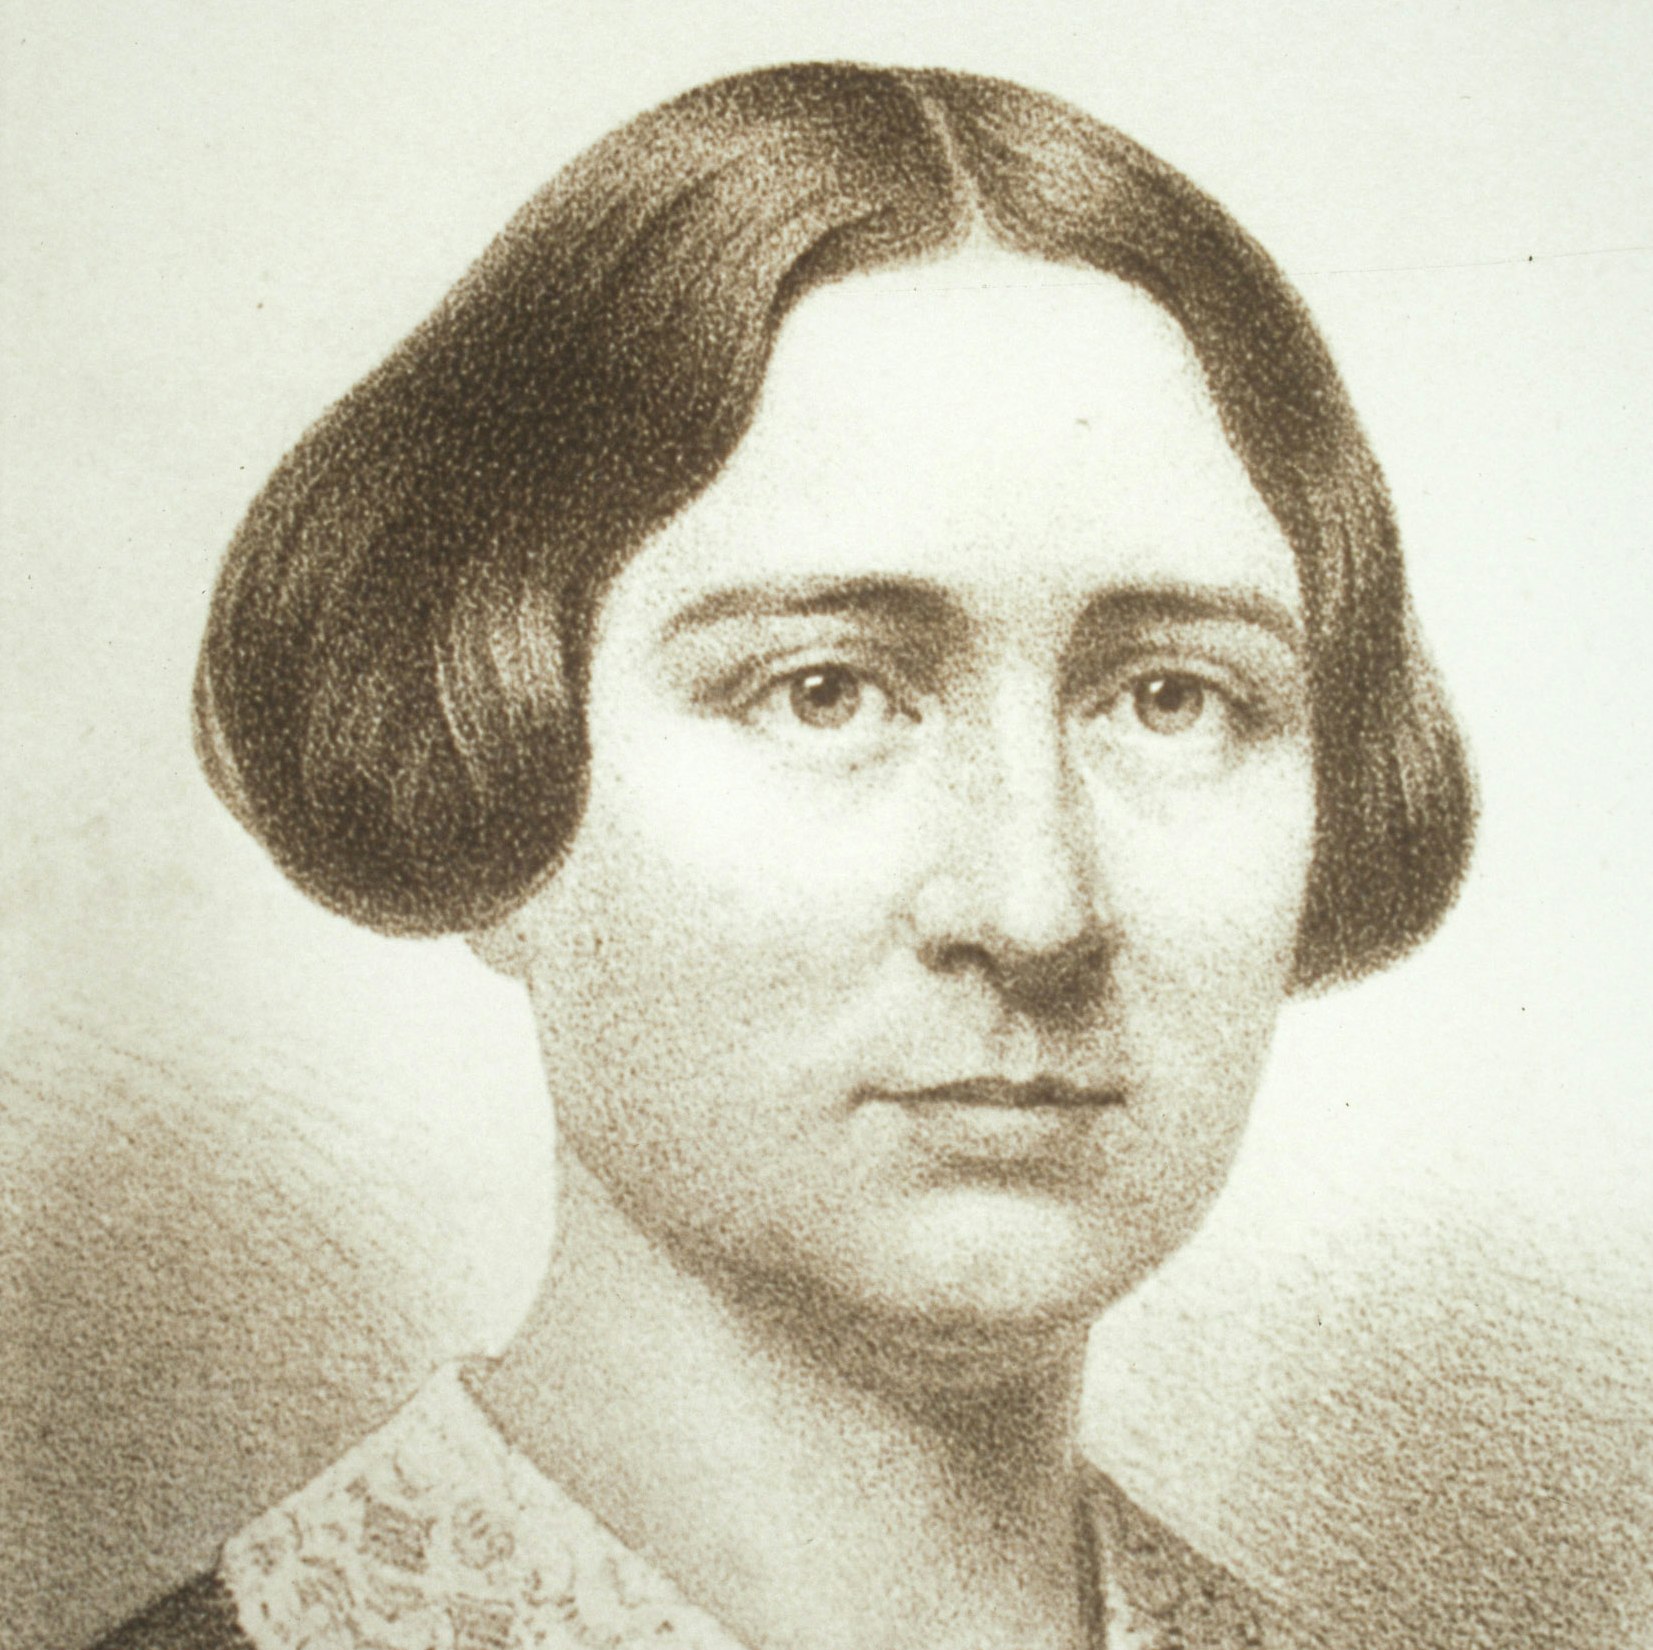 Portrait of Antoinette Blackwell